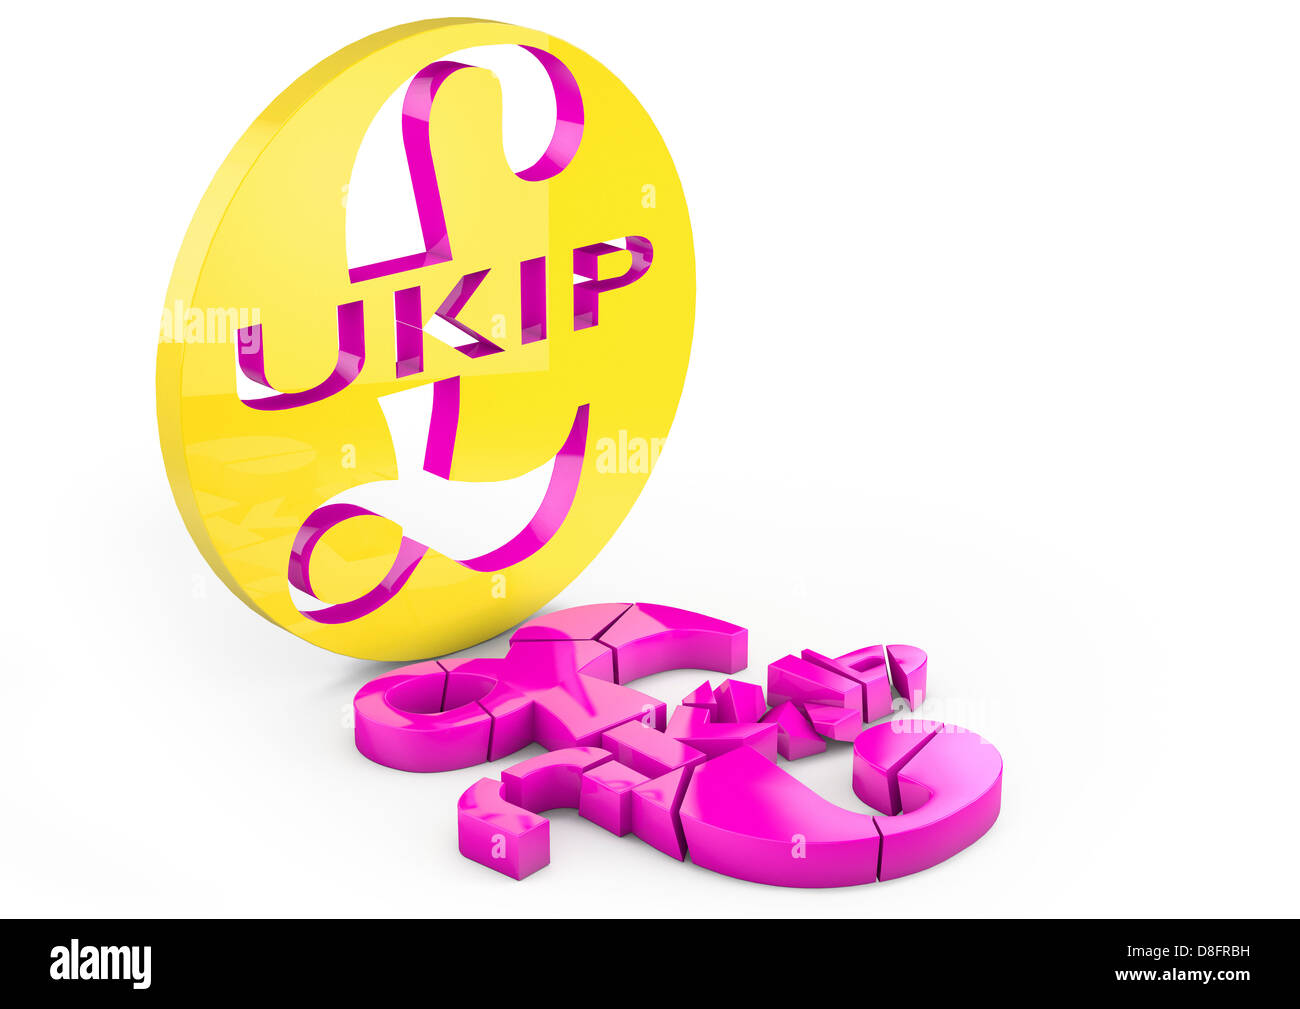 Bröckelnden / gebrochen UKIP-Logo, die auseinander fallen Stockfoto